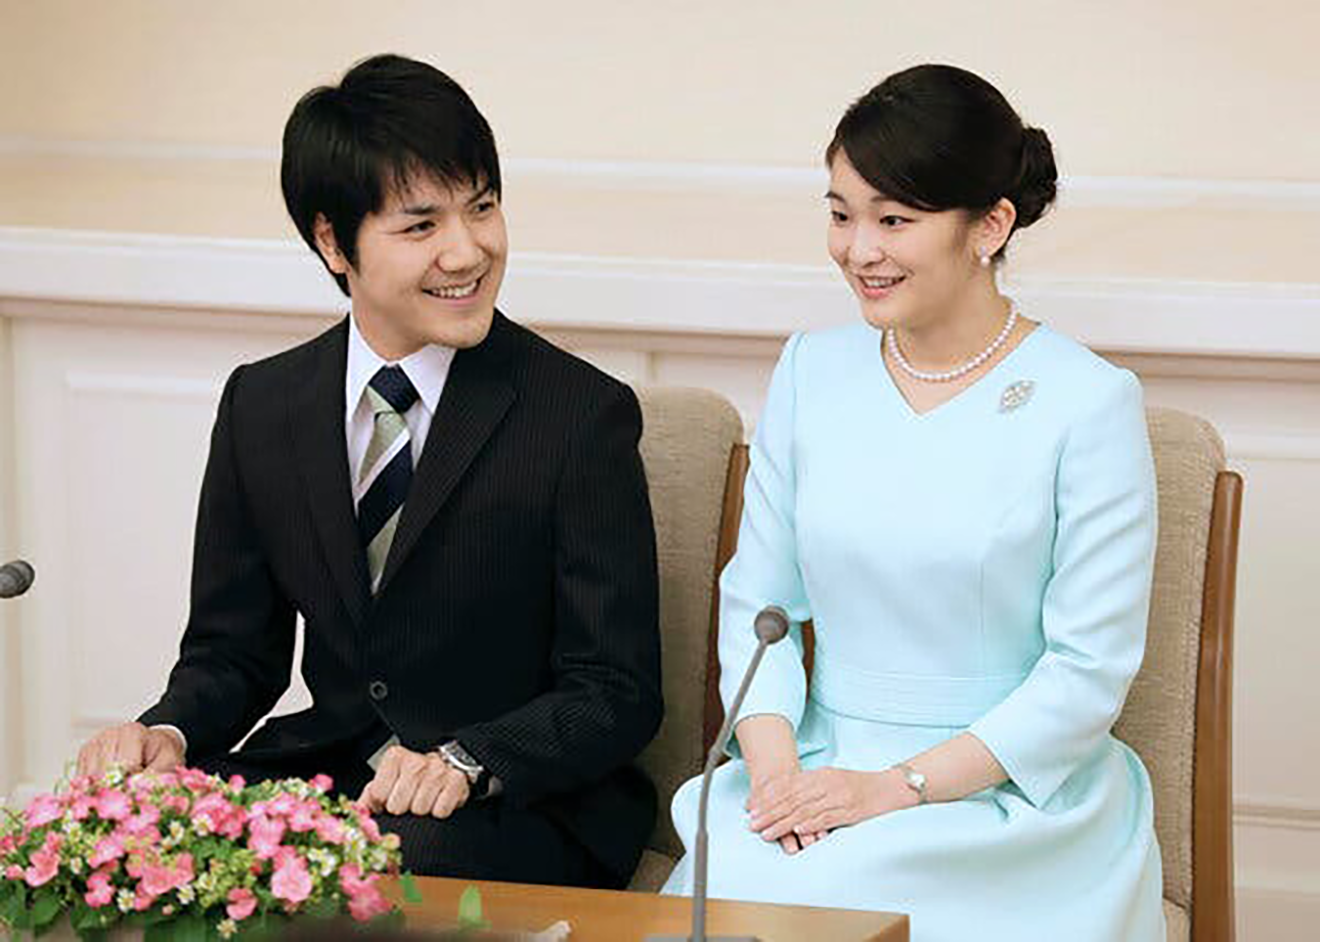 Komuro Kei đỗ kỳ thi luật sư tại Mỹ, tương lai sắp tới của vợ chồng ‘cựu phò mã’ Nhật sẽ ra sao? - Ảnh 4.